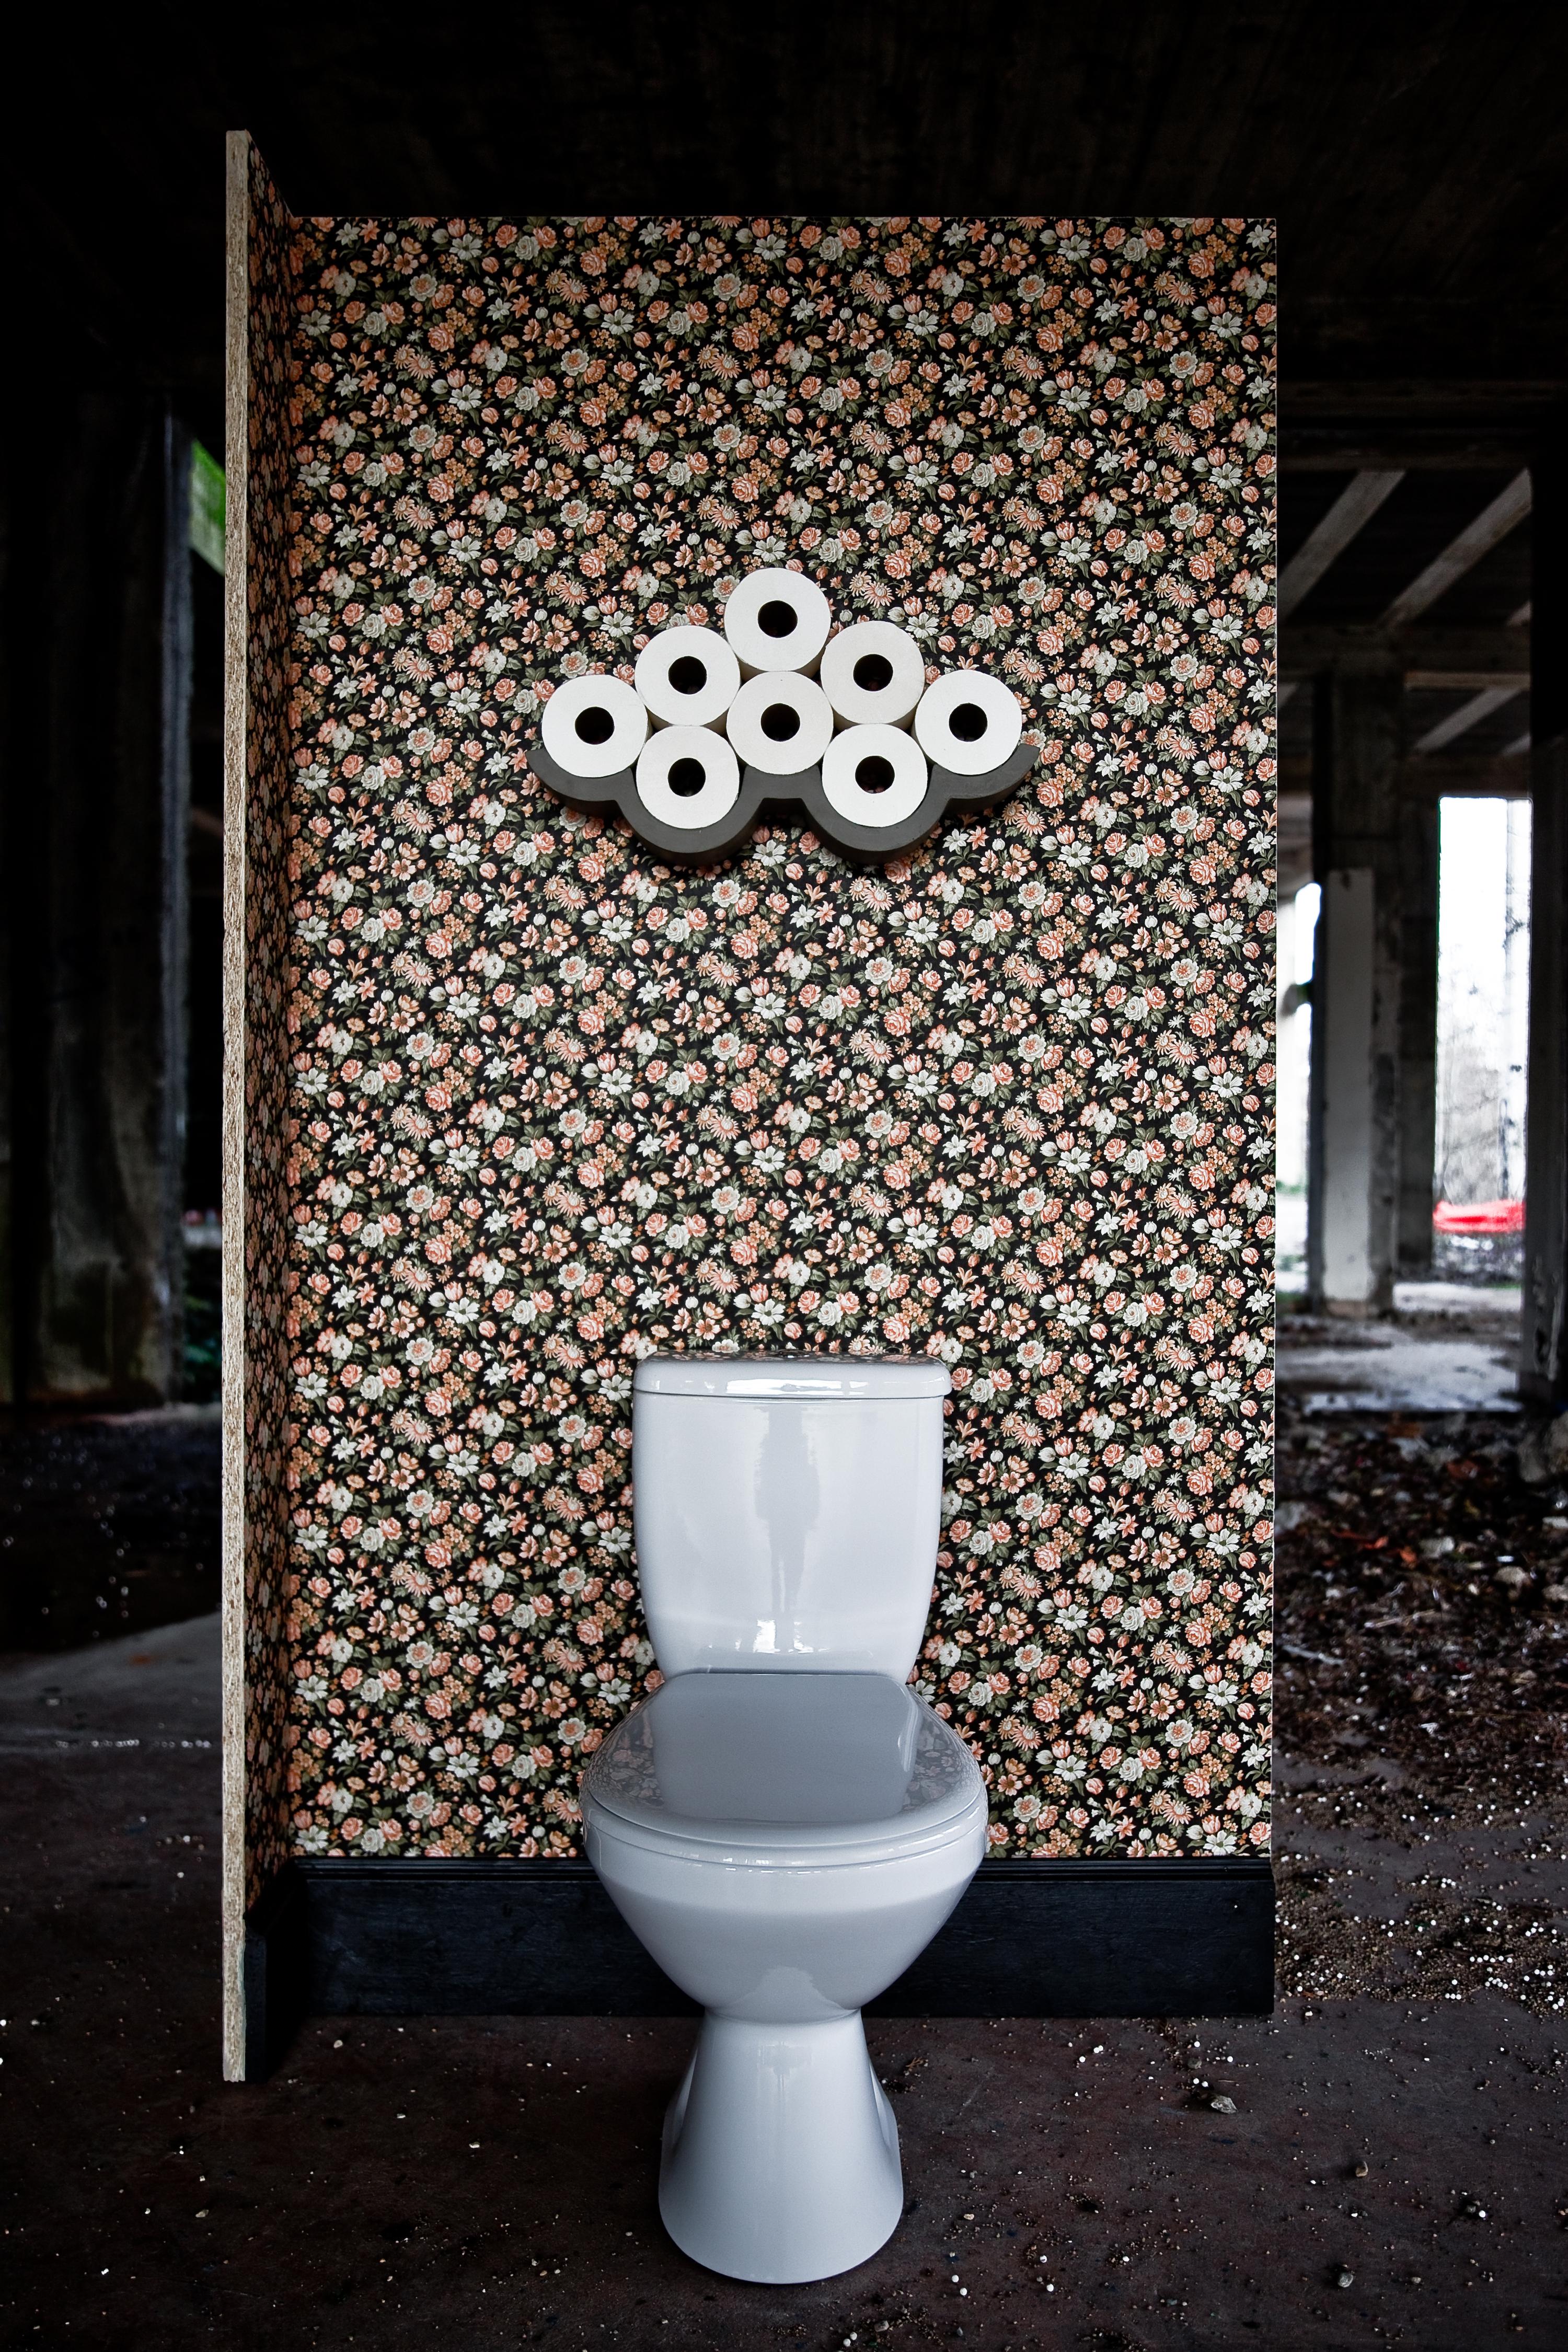 Denn auch kleine Räume verdienen ein wenig Leichtigkeit. 

Bertrand Jayr hat eine kleinere Version seines erfolgreichen Toilettenpapierregals entworfen, die speziell für schmale Waschräume geeignet ist. 

Verstecken Sie Ihr Toilettenpapier nicht